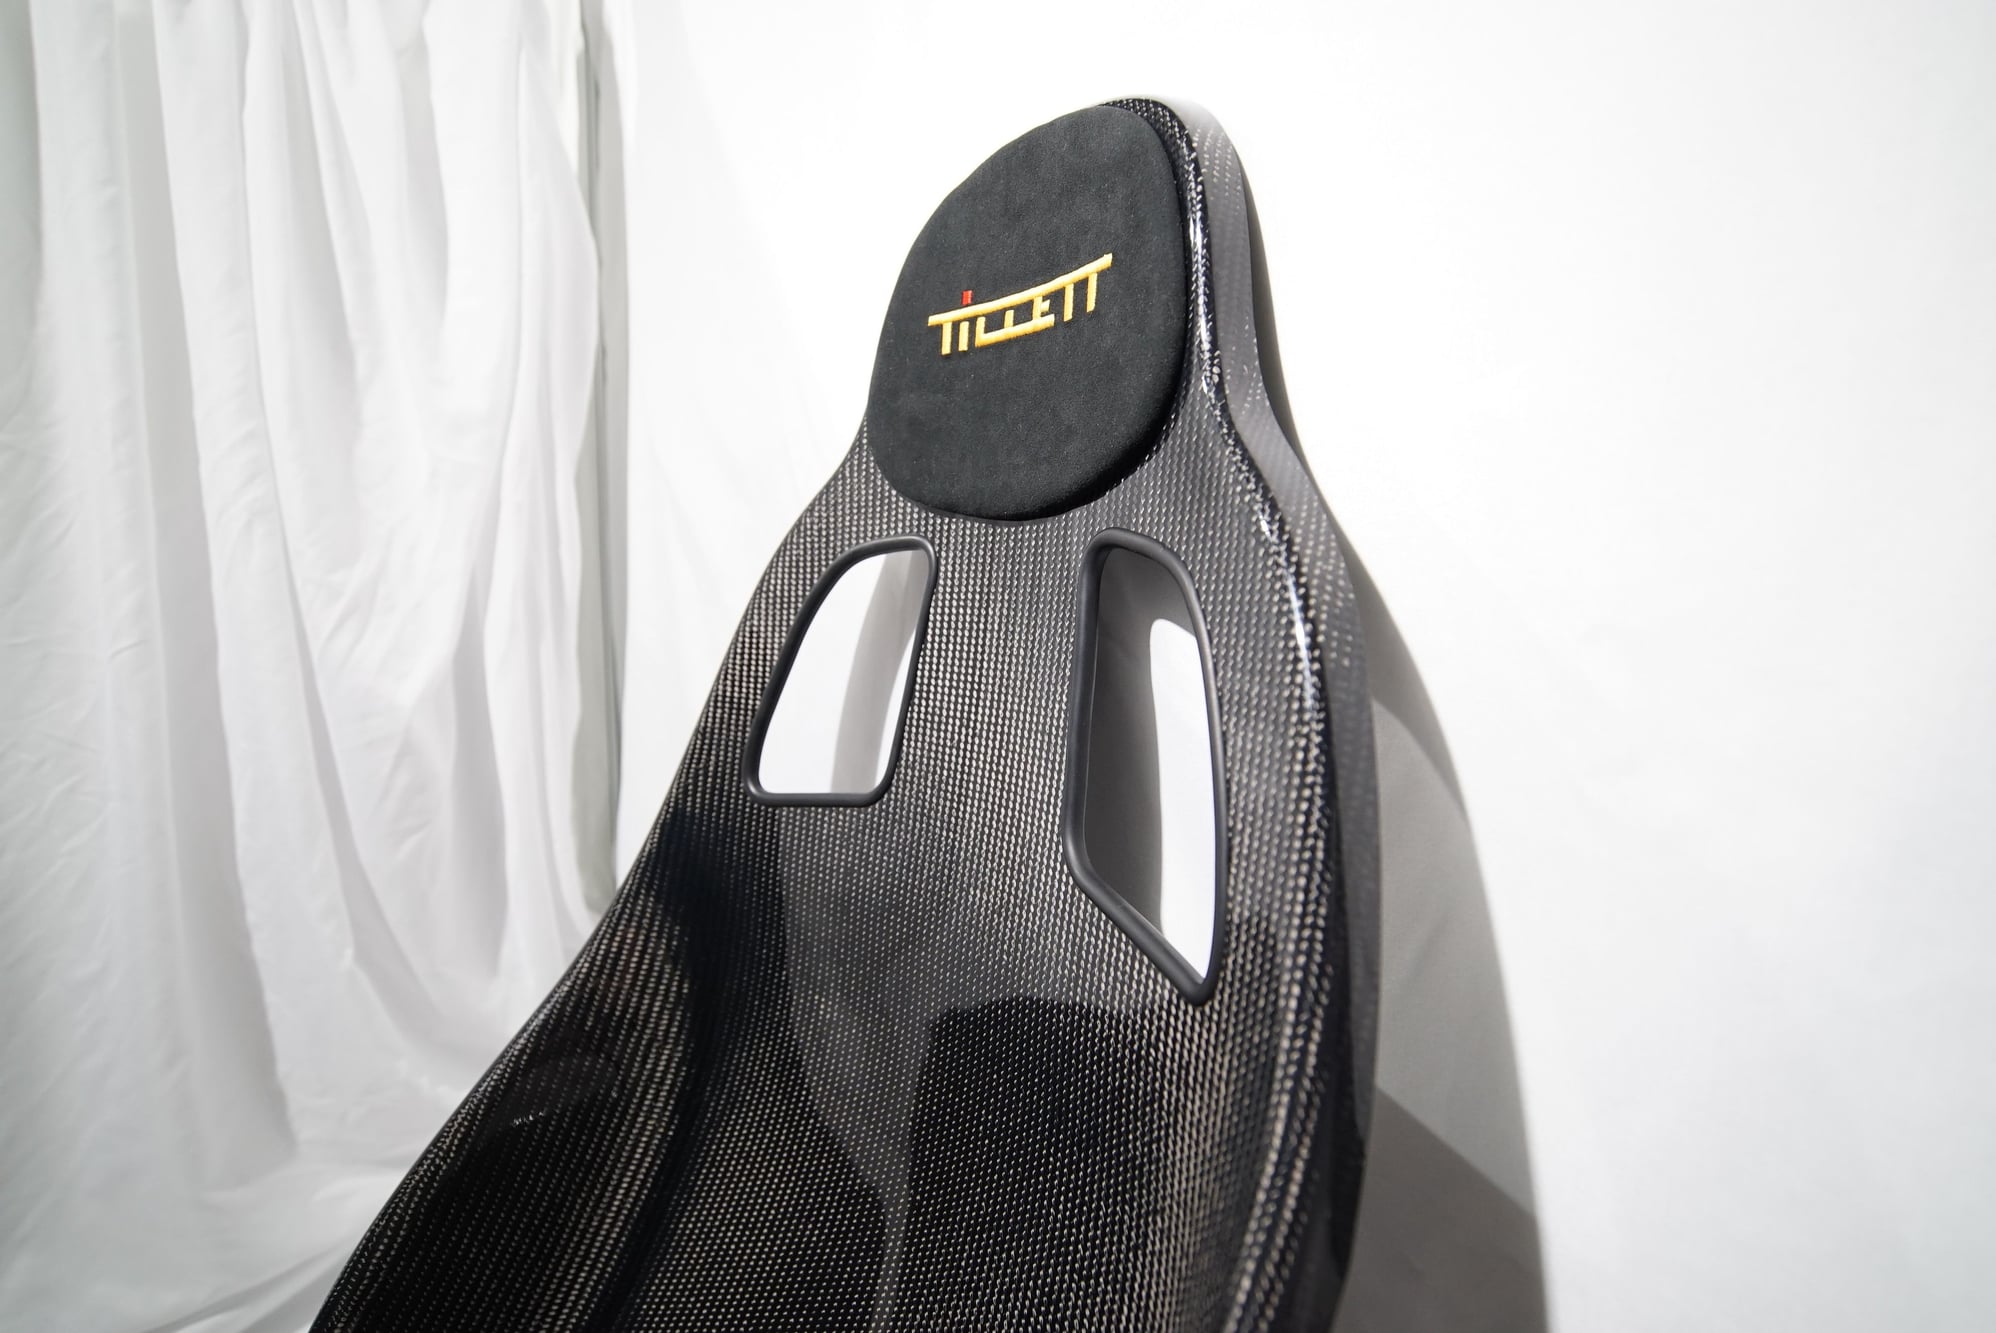 Putting Tillet Carbon Fiber Seats in My zr1 - CorvetteForum - Chevrolet  Corvette Forum Discussion